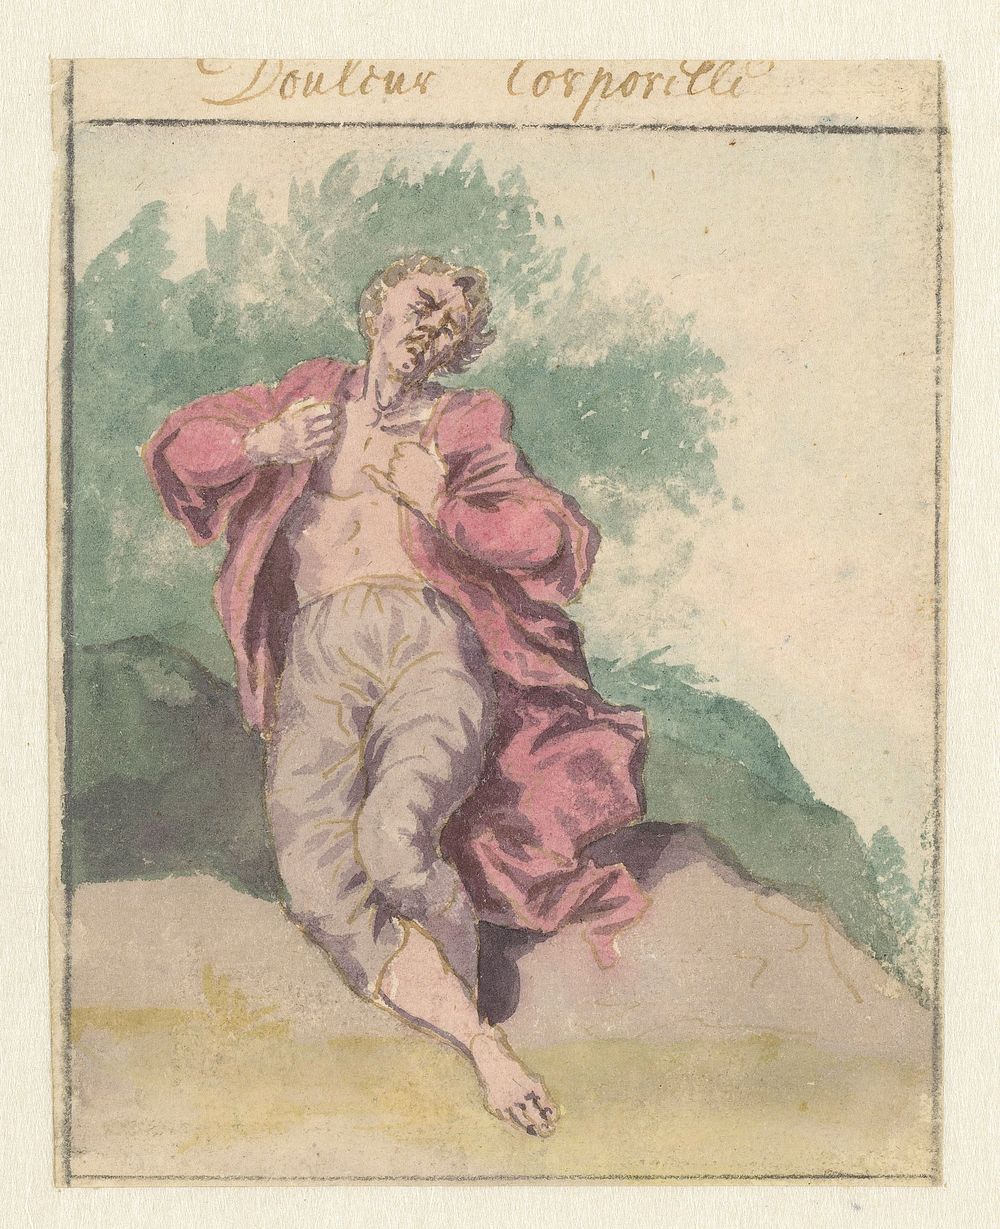 Lichaamssmart (1675 - 1737) by Pieter van den Berge